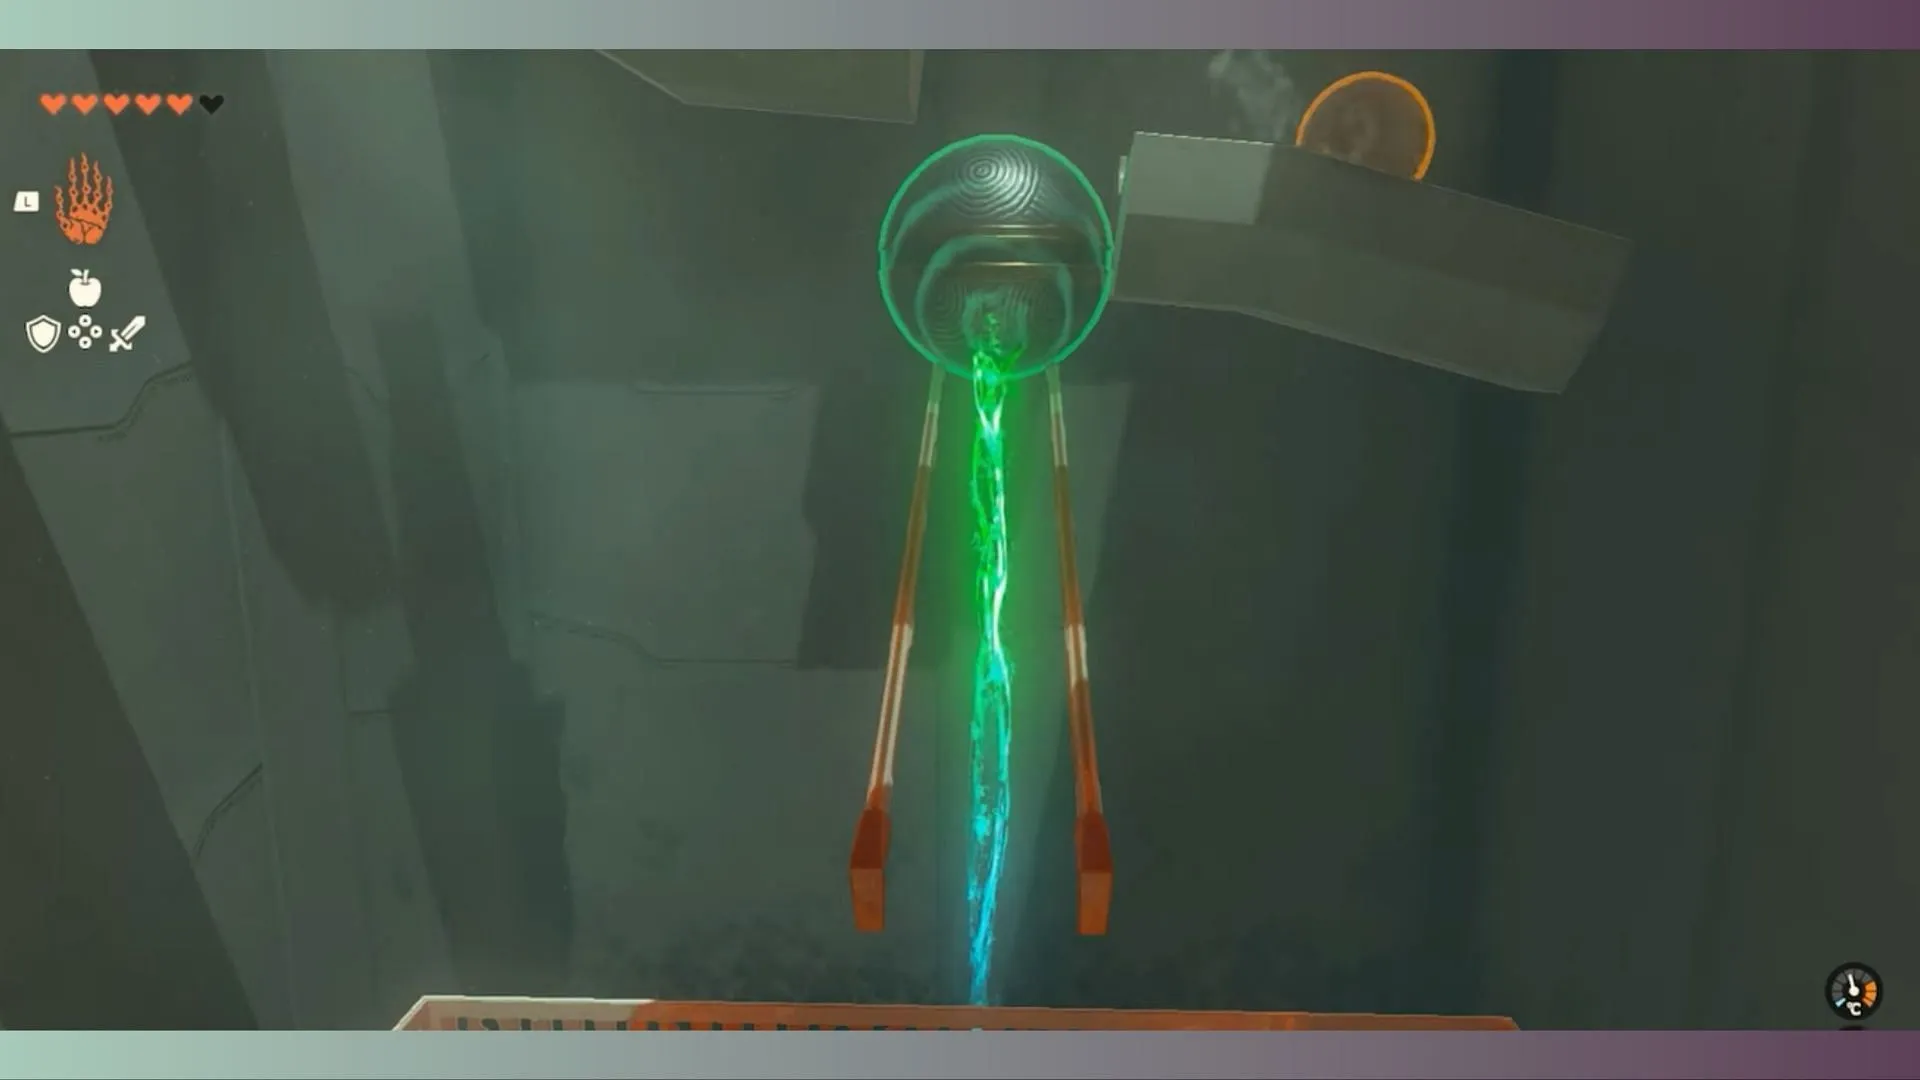 Posiziona la palla grande sulla ringhiera di metallo usando Ultrahand (Immagine tramite Nintendo)